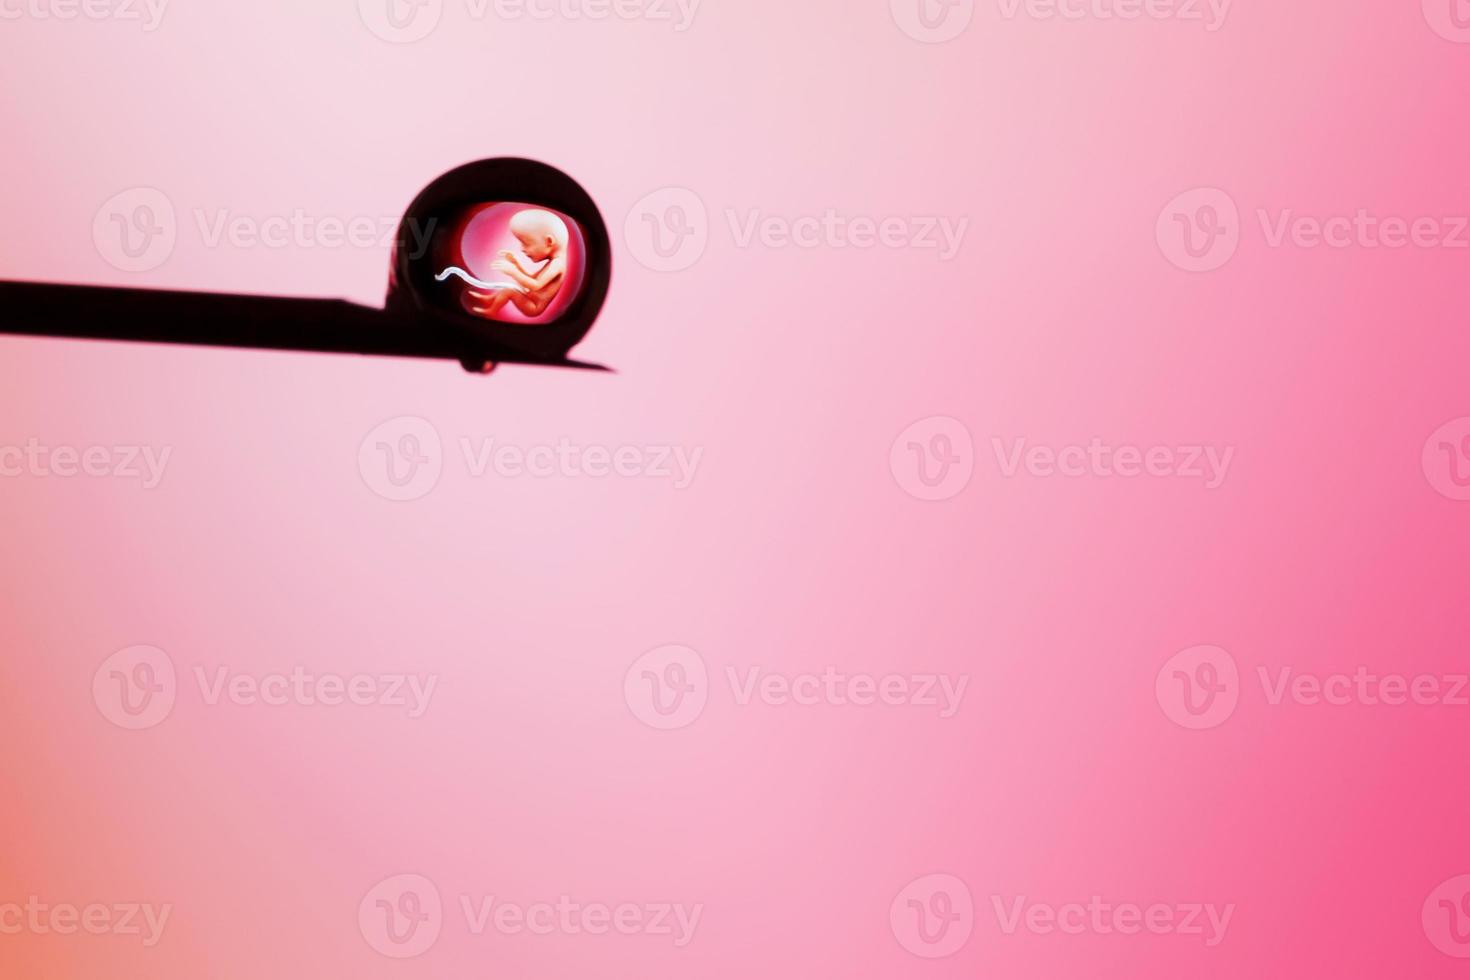 embryon humain dans une goutte sur la pointe d'une aiguille sur fond rose. éditorial illustratif photo